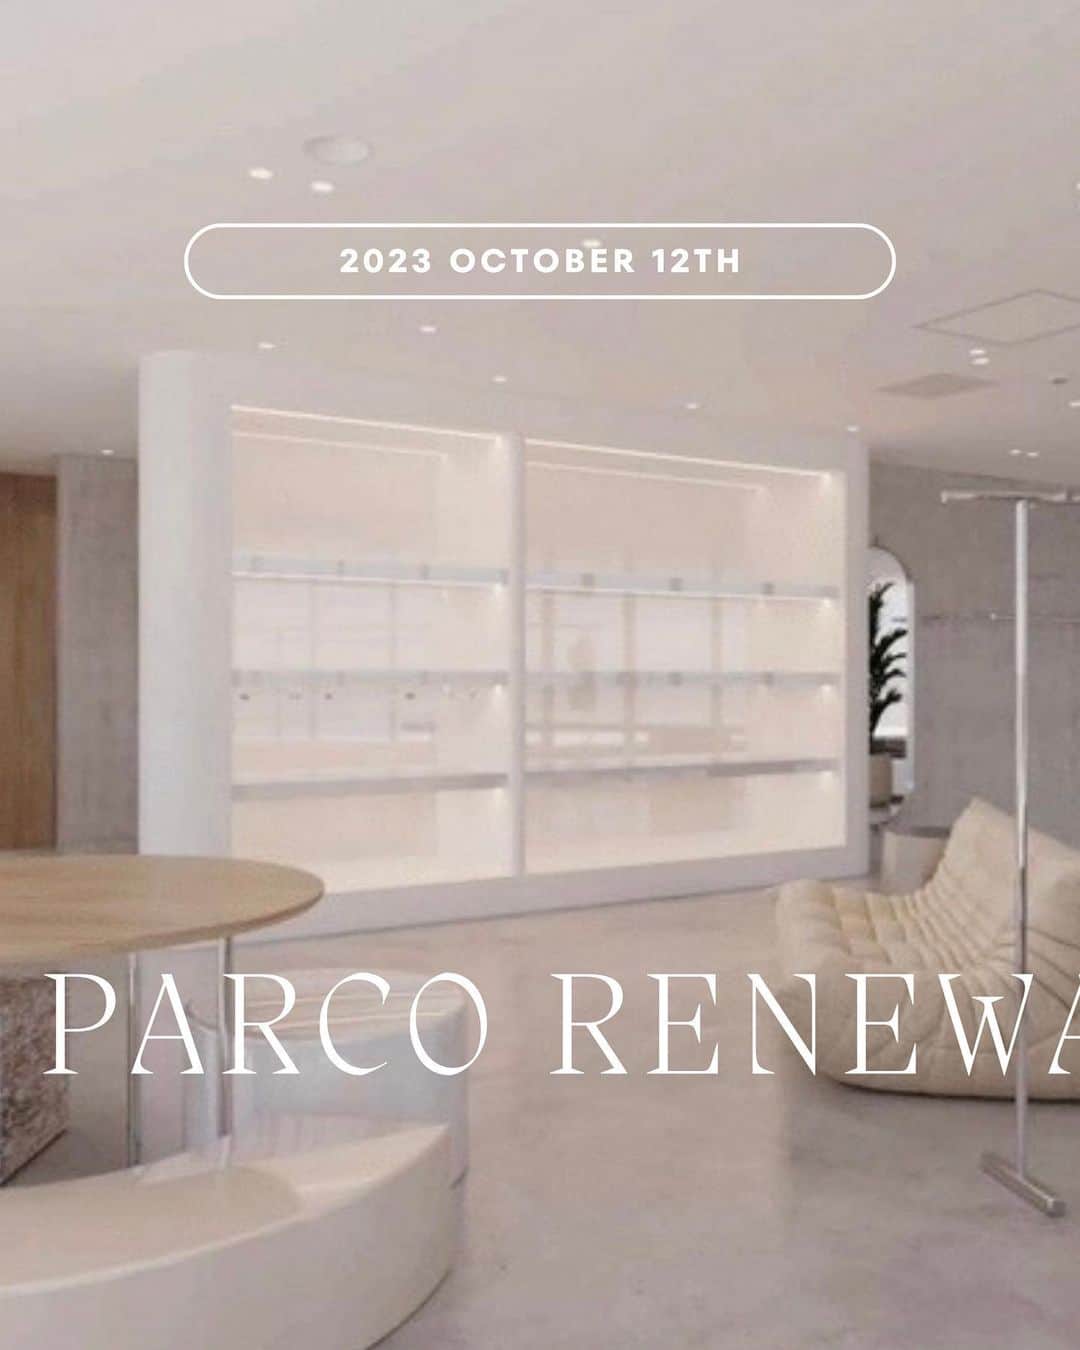 SeaRoomlynnさんのインスタグラム写真 - (SeaRoomlynnInstagram)「. ▪️NAGOYA PARCO RENEWAL OPEN◾️ ⁡ 10月12日(木)名古屋PARCO店が2Fから1Fに区画移動しリニューアルオープンいたします！ ⁡ ⁡ 広々とした別荘のような開放感と、ギャラリーのスタイリッシュさを融合させ、洗練された雰囲気を生み出す空間デザインを提案。 ⁡ モルタル壁や床、ガラスブロックやステンレスの要素にソリッドな質感を感じさせながら、完全な開放感をいかした曲線的なレイアウトの導入により空間に流動的な美しさを。 白とハーフトーンのカラースキームは空間に調和をもたらし、無垢板のディスプレイ天板など自然素材のアクセントと植物の配置により自然の魅力を加えた空間となっております。 ⁡ ⁡ ______________________________________ ⁡ ⁡ オープンを記念いたしまして限定企画をご用意いたしました✔︎ ⁡ ⁡ 【LIMITED NOVELTY】 ・￥33,000(税込)以上お買い上げのお客様へ 「トラベルポーチ」をプレゼント  ⁡ ・お買い上げの方に名古屋PARCO店限定オリジナルショッパーをプレゼント ⁡ ⁡ 【先行発売】 ・スラッシュカットストレートワンピース ・Mould soleサイドゴアロングブーツ ⁡ ⁡ 【PR STAFF VISIT EVENT】 オープン当日の10月12(木) 14:00～18:00頃ディレクターとPRスタッフが来店 ⁡ ⁡ ※ノベルティはお一人様1点まで無くなり次第終了となります。 ※当日ご来場されたお客様の状況に応じて、整理券の配布、または入場制限をさせていただく場合がございますので予めご了承ください。 ※リニューアルオープン初日は混雑が予想される為お取り置きは出来かねます。翌日以降お問い合わせください。 ⁡ ⁡  みなさまのご来店を心よりお待ちいたしております。 ⁡ ⁡ ⁡ Sea Room lynn 名古屋 PARCO 〒460-0008 愛知県名古屋市中区栄3-29-1 名古屋 PARCO 西館 1F (10:00 - 21:00 / 不定休) ⁡ Sea Room lynn Nagoya PARCO 3-29-1 WEST1F Sakae, Naka-ku, Nagoya-shi, Aichi, 460-0008, Japan (Open: 10:00 - 21:00) ⁡ ⁡ ⁡ #searoomlynn #シールームリン #名古屋PARCO #リニューアルオープン #名古屋 #nagoya  #renewal」10月4日 11時58分 - searoomlynn_official